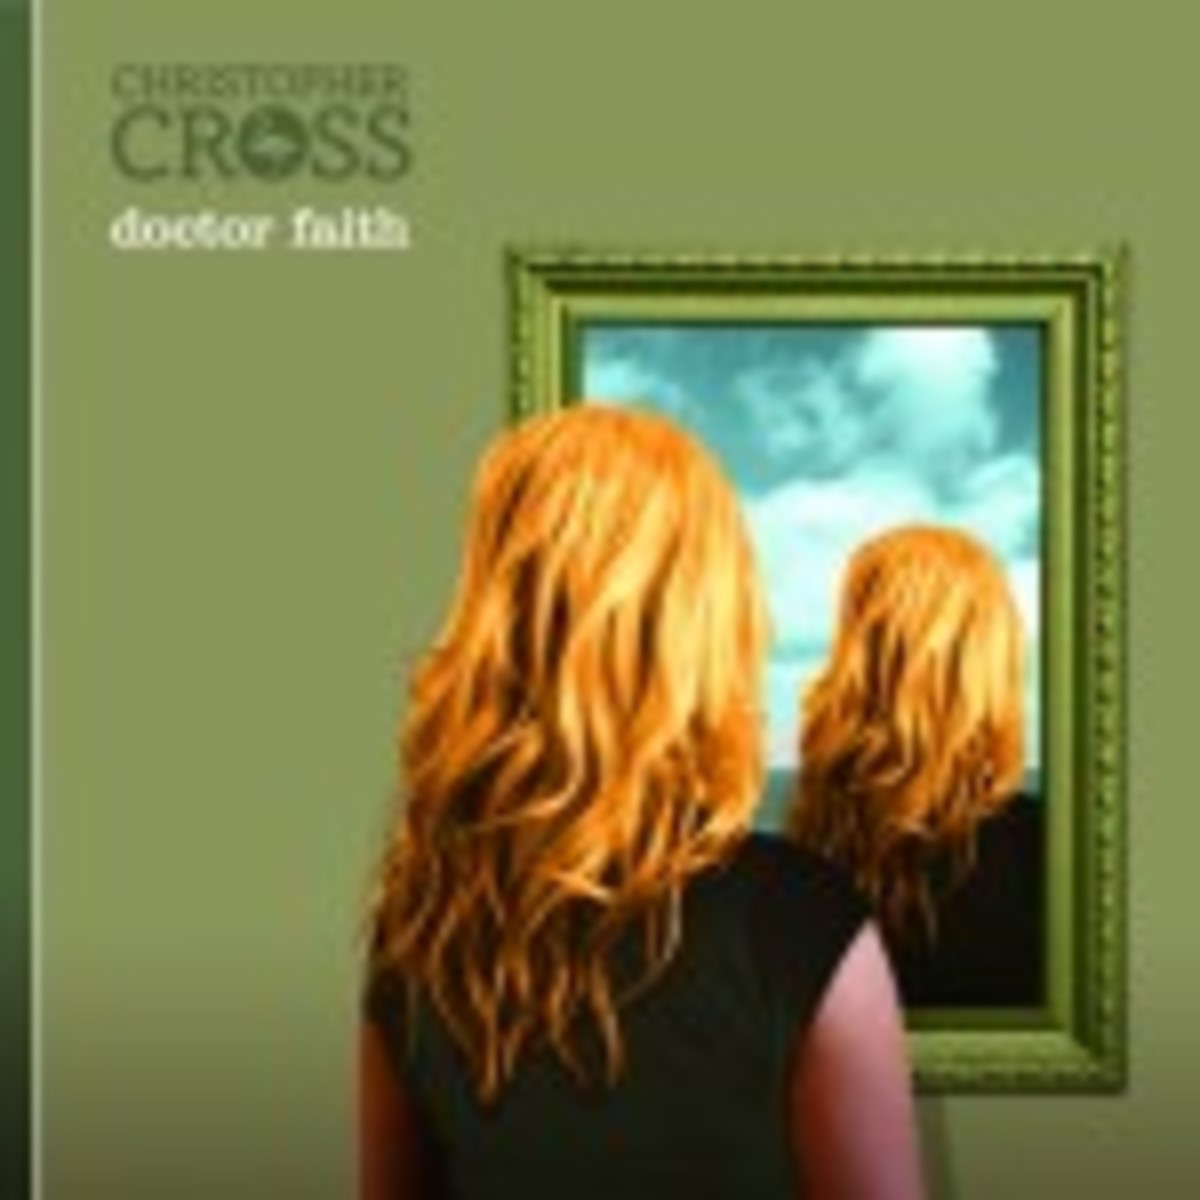 Christohper Cross Doctor Faith